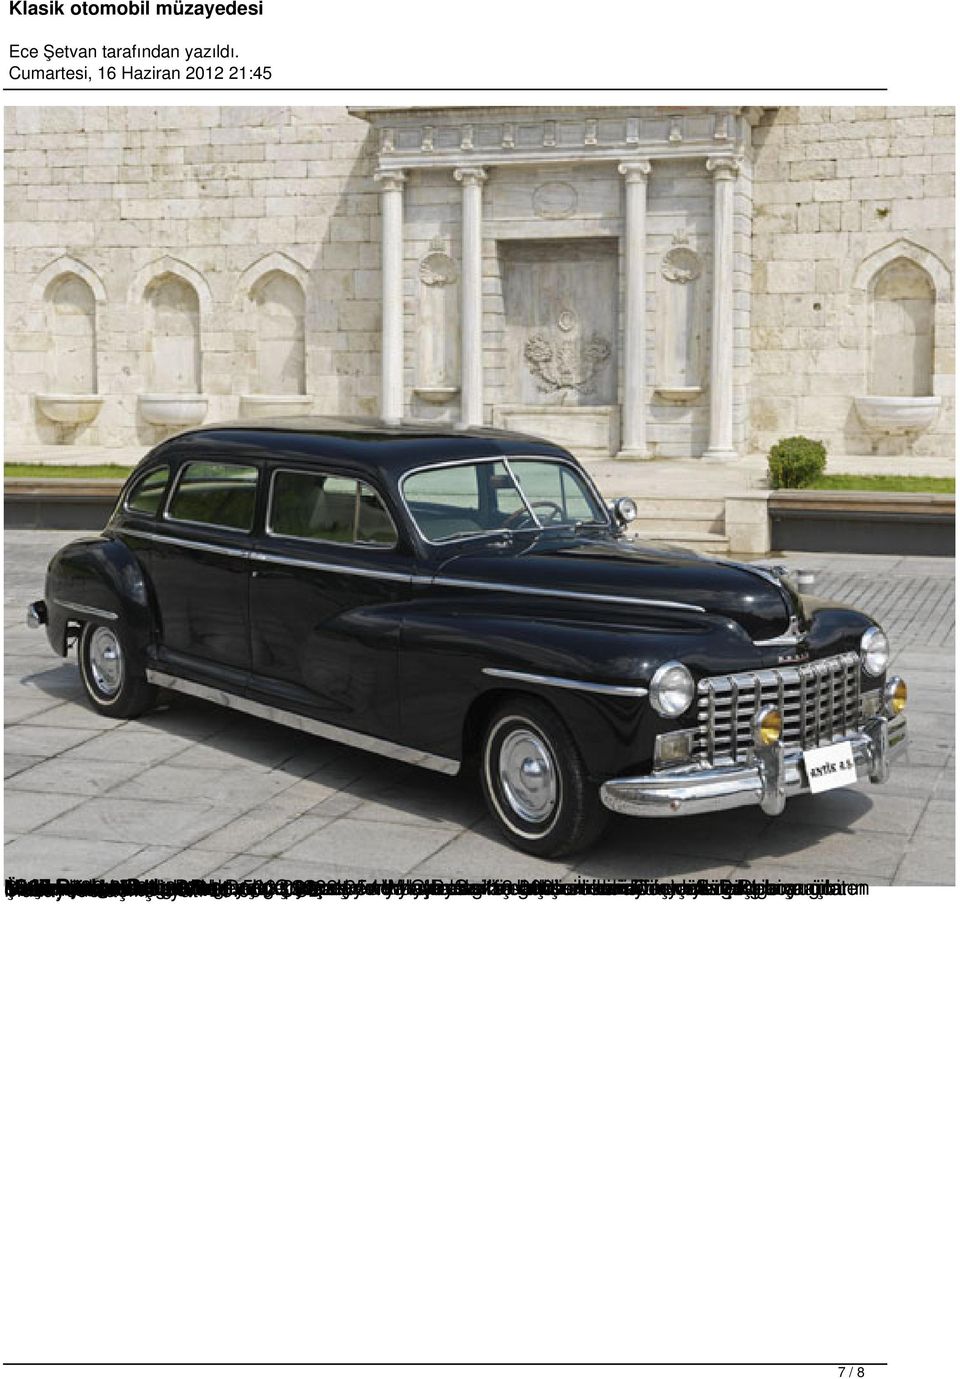 000 Coronet Company USD 1946-1954 parçaları 1928 yavaş askeri yılında ve evrimleşti. adıyla ve Wayfarer kamyon yılları hava Chrysler e Detroit in arası baskını Savaş ve gibi 18.